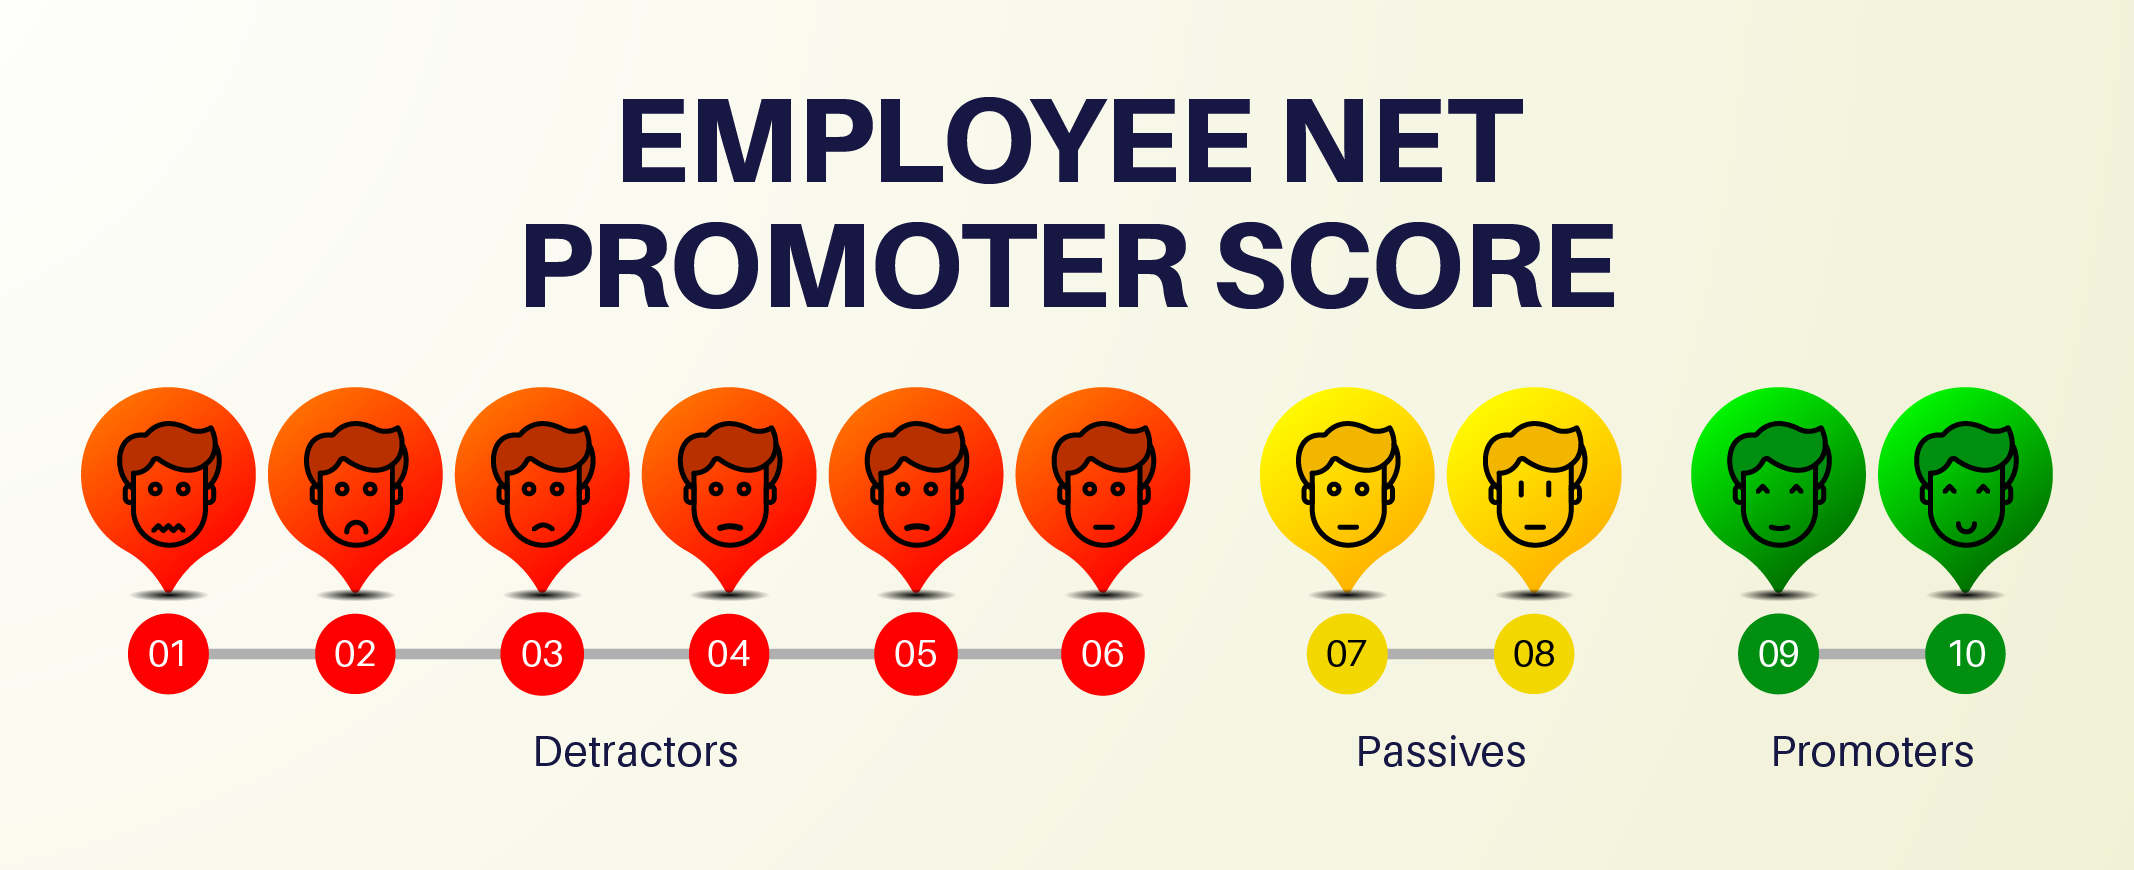 employee net promoter score